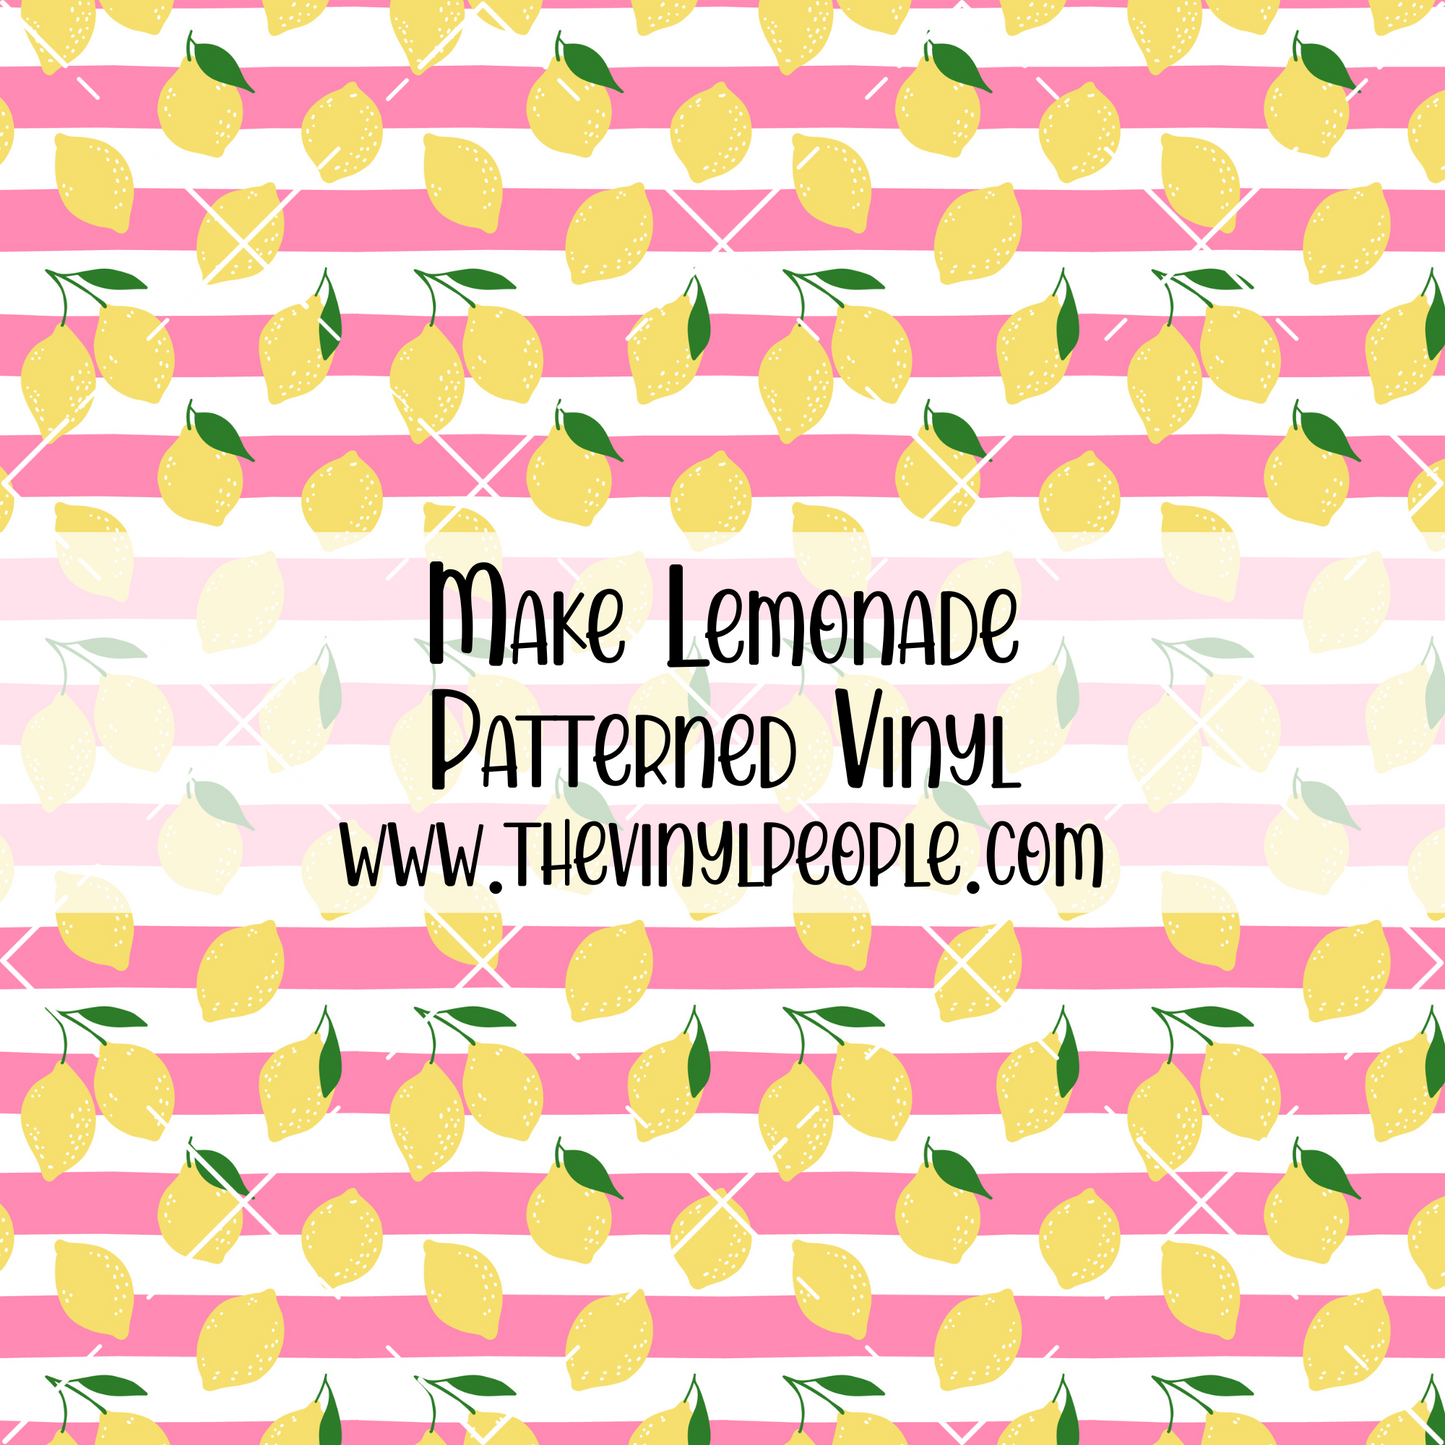 Make Lemonade Patterned Vinyl